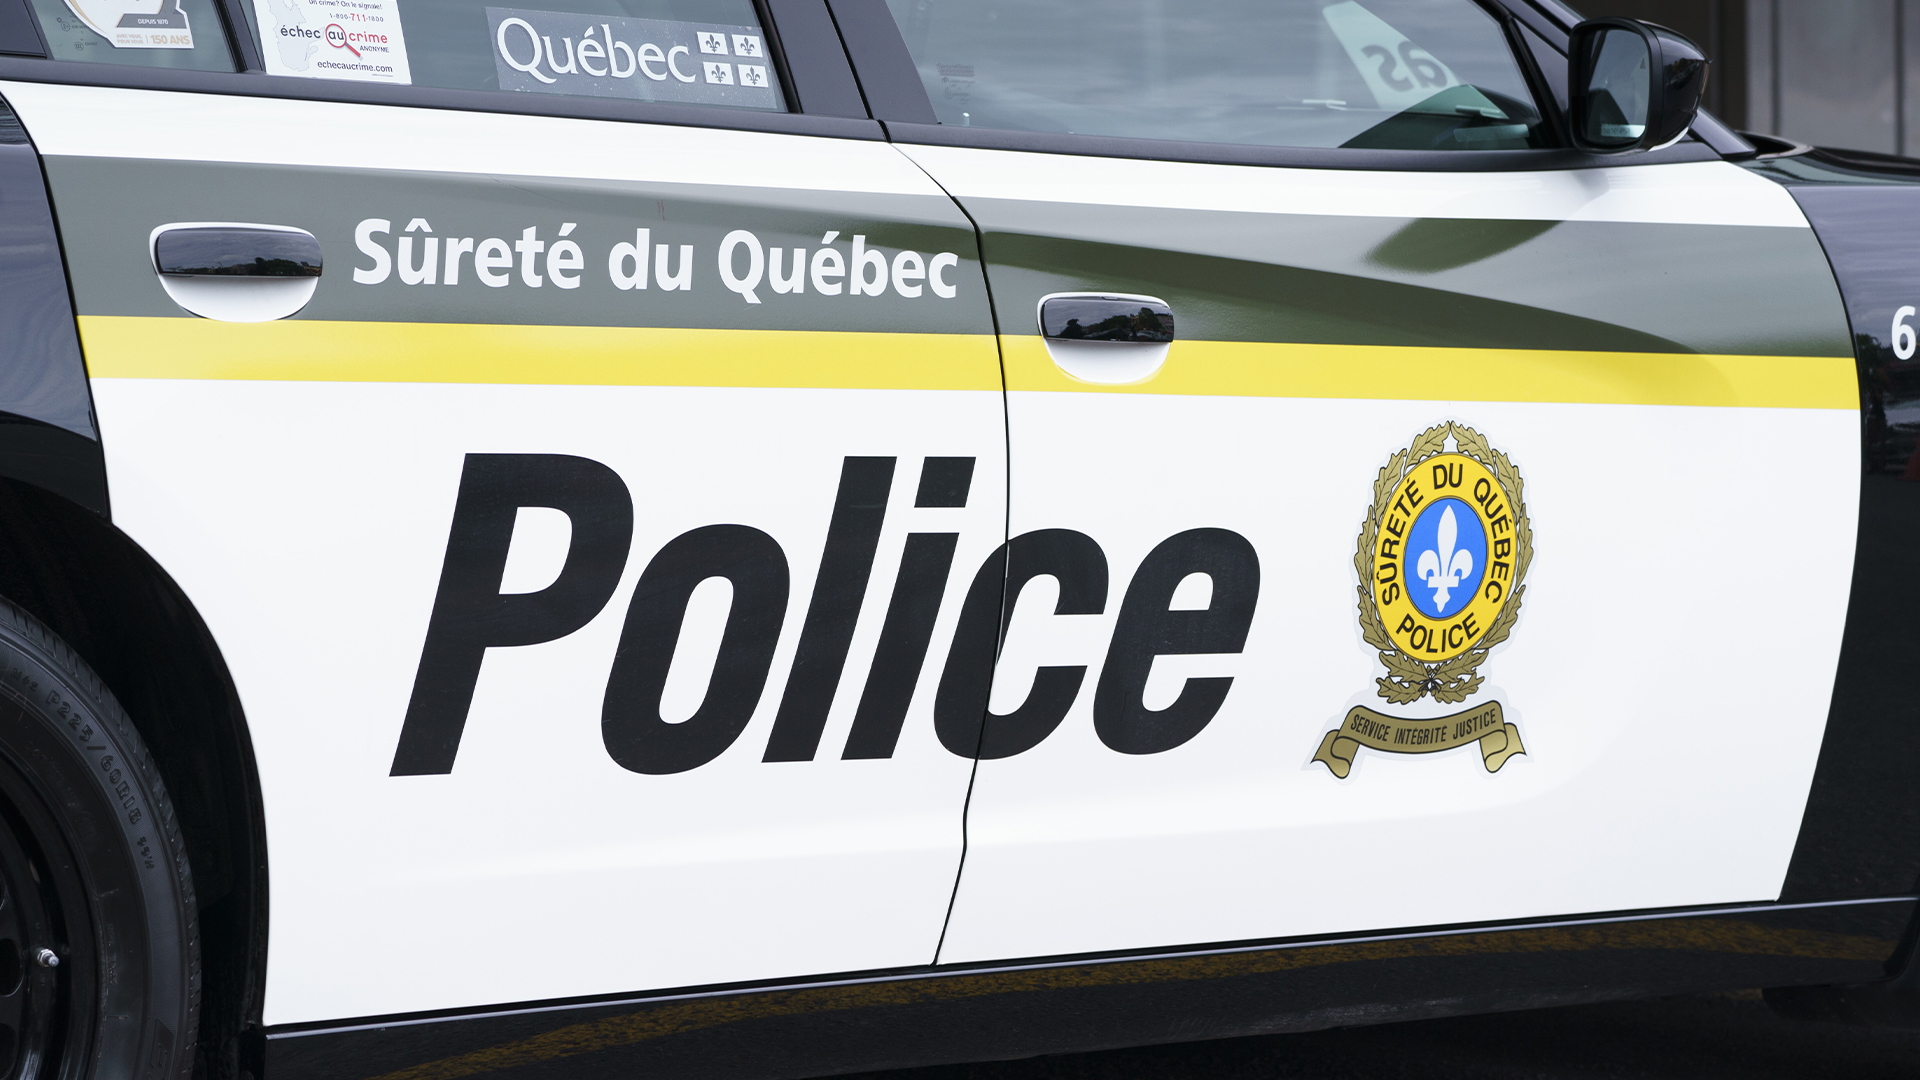 Un homme aurait fait une chute dans une fosse à purin lundi soir dans la municipalité Les Hauteurs, située dans le Bas-Saint-Laurent. Il manque à l'appel depuis.